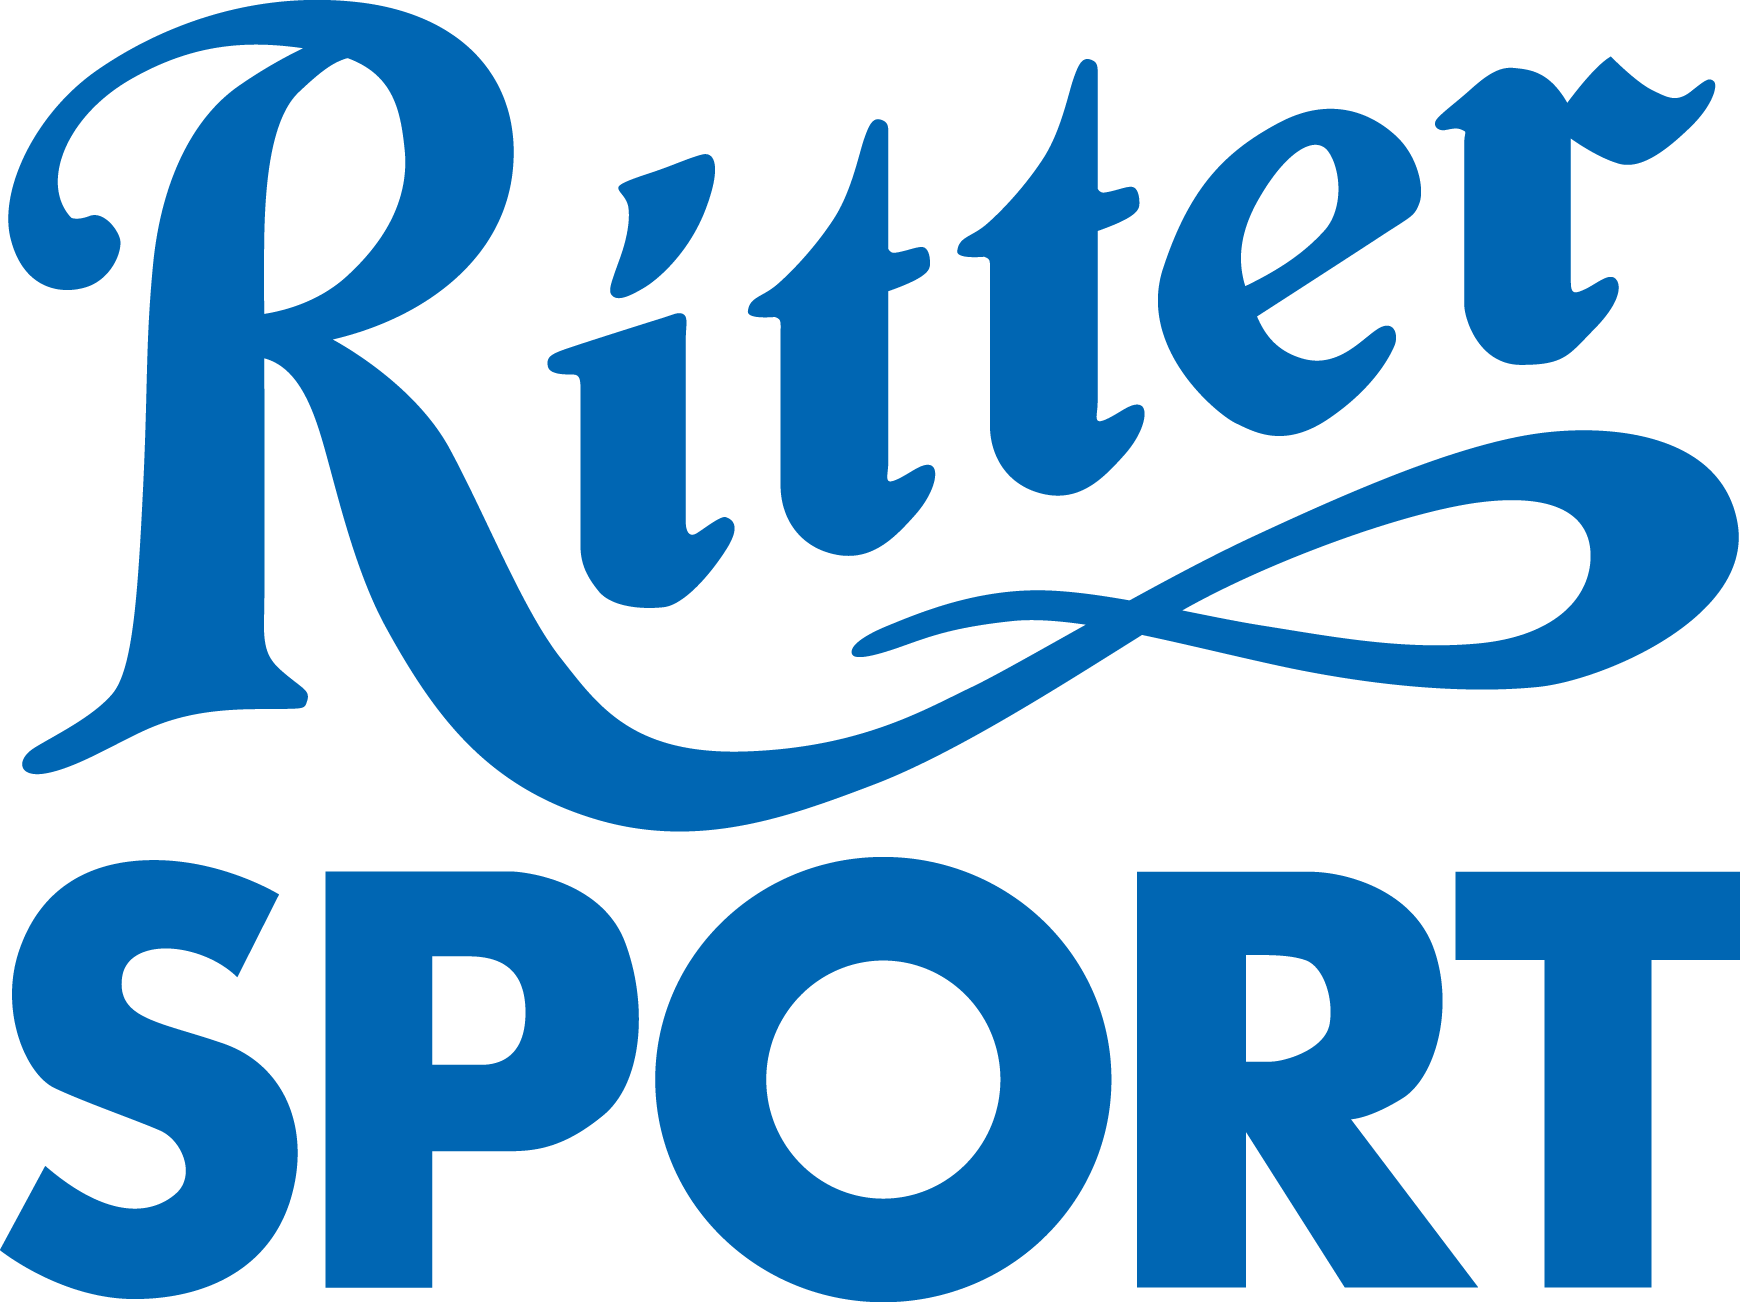 Ritter Sport - Ritter Sport Logo Png (1740x1302)